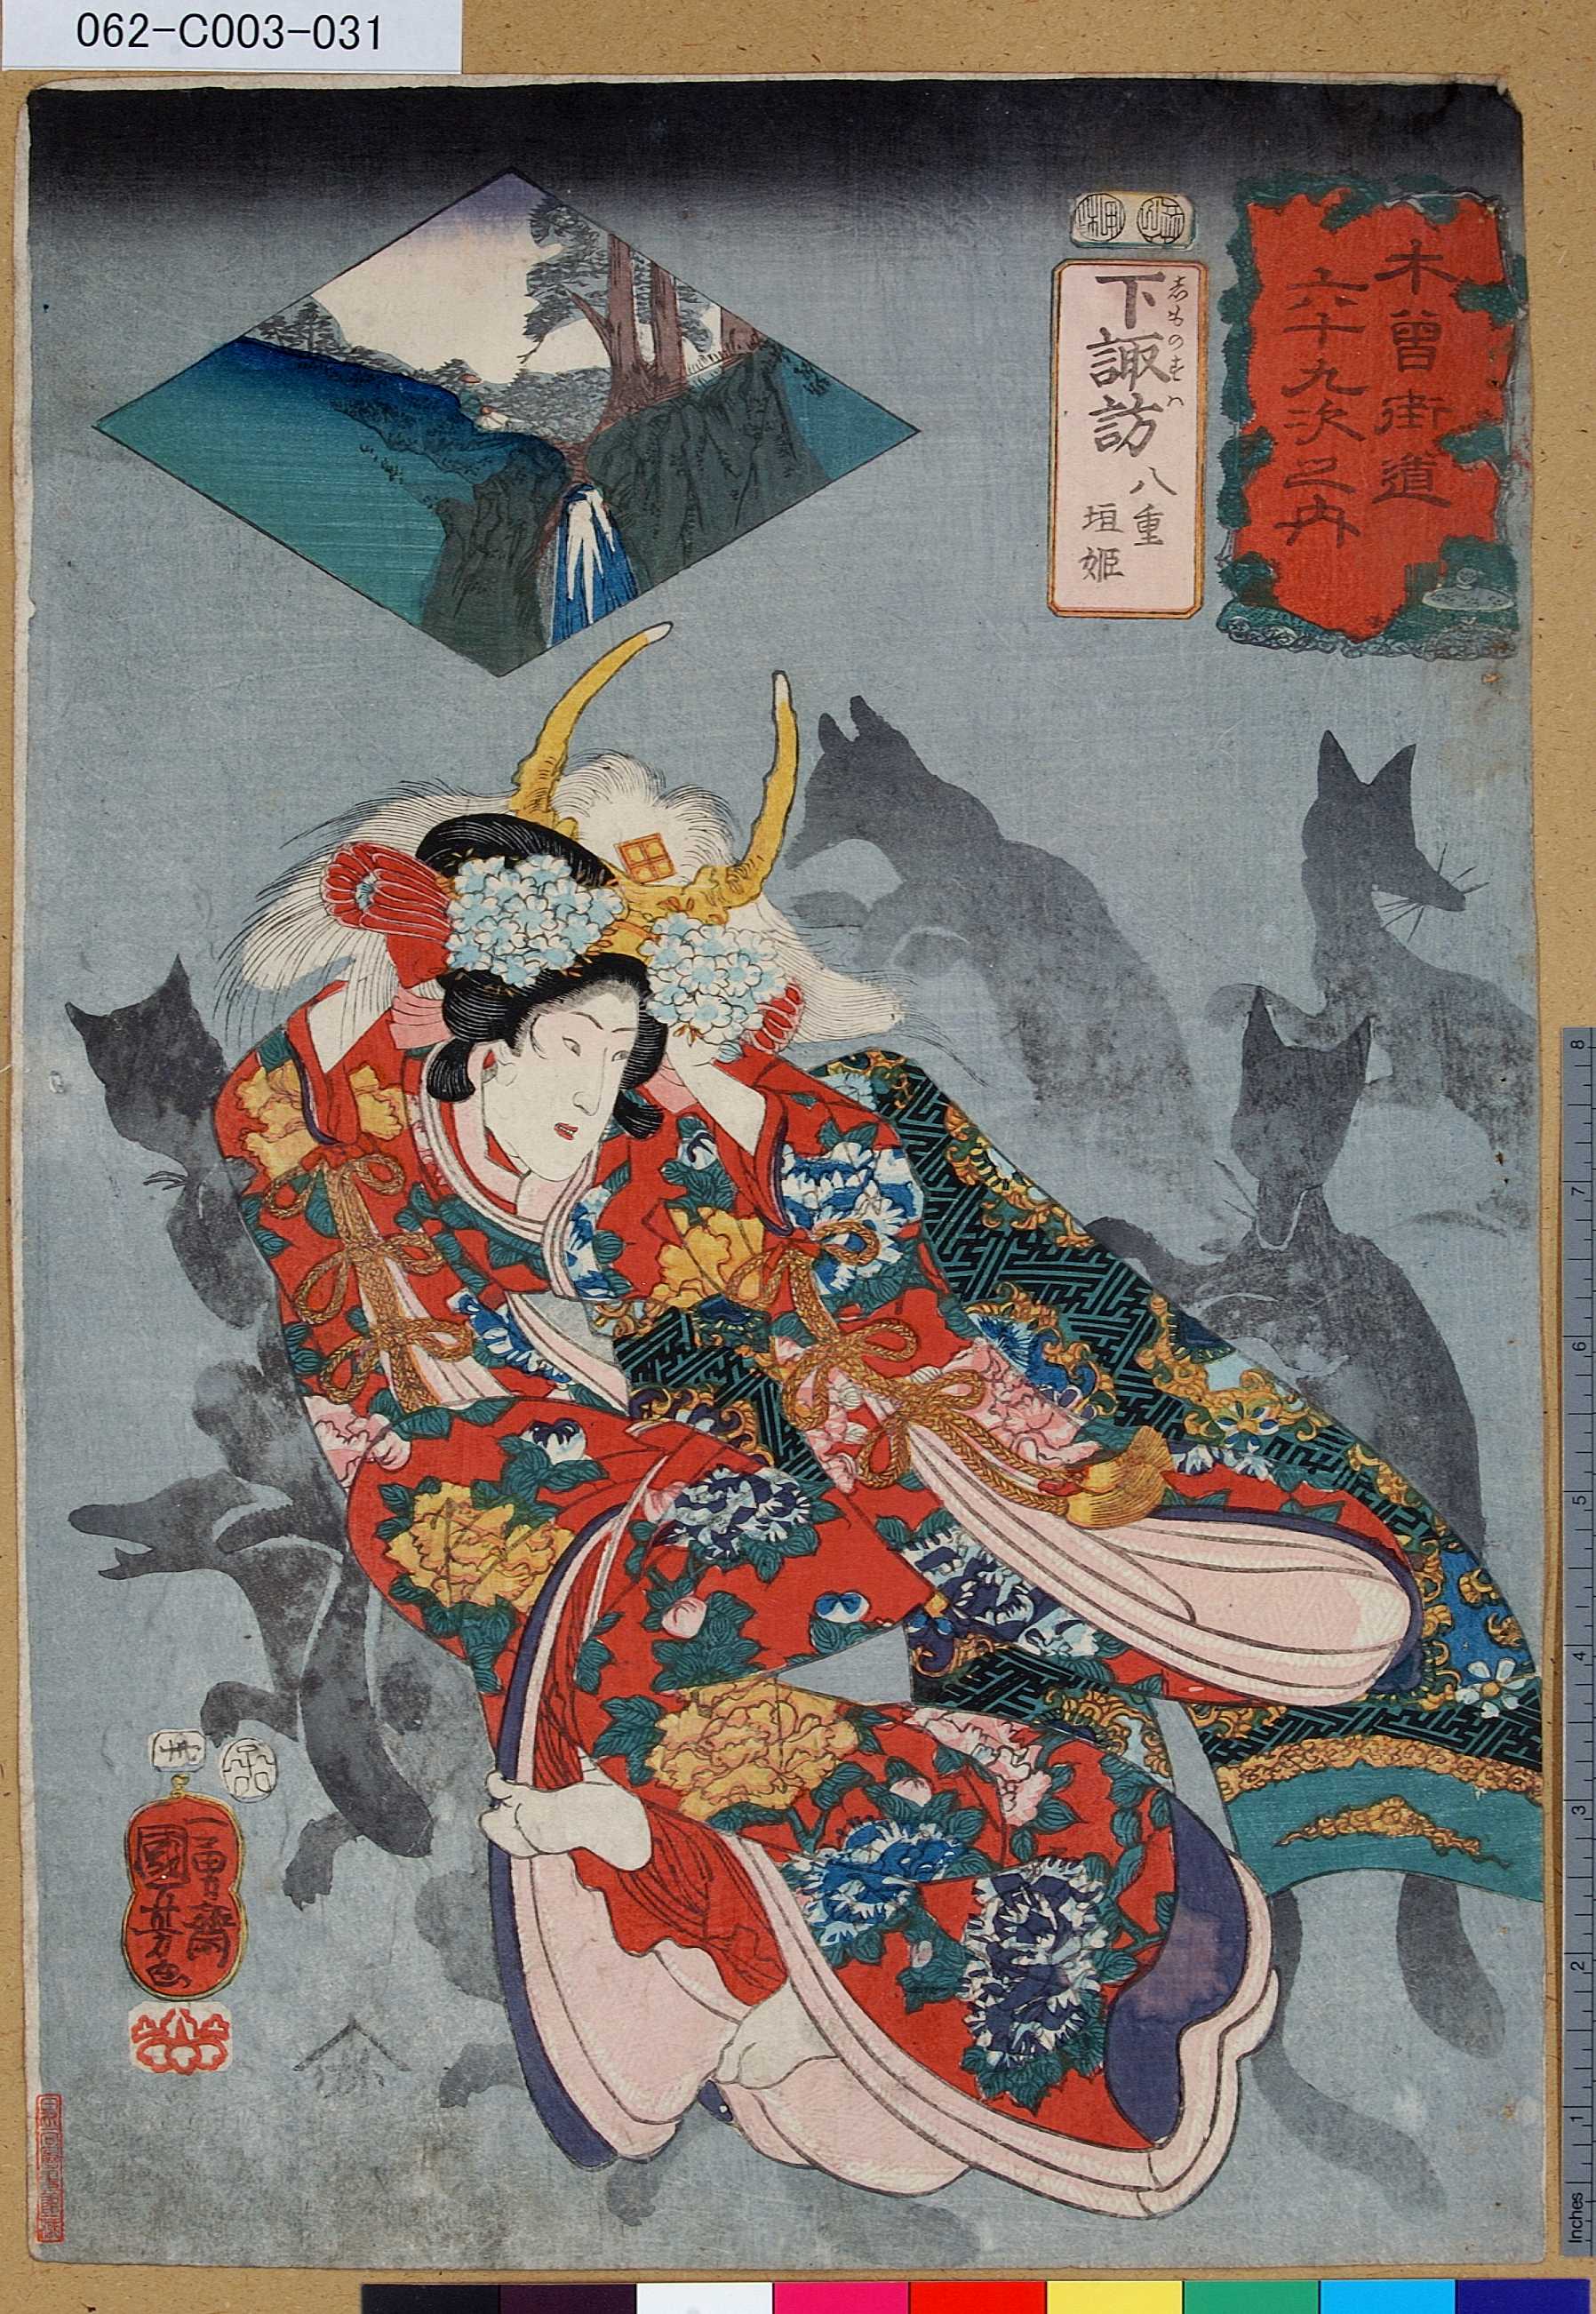 Utagawa Kuniyoshi: No. 30 Shimo no Suwa 下諏訪/ Kisokaido rokujoku 